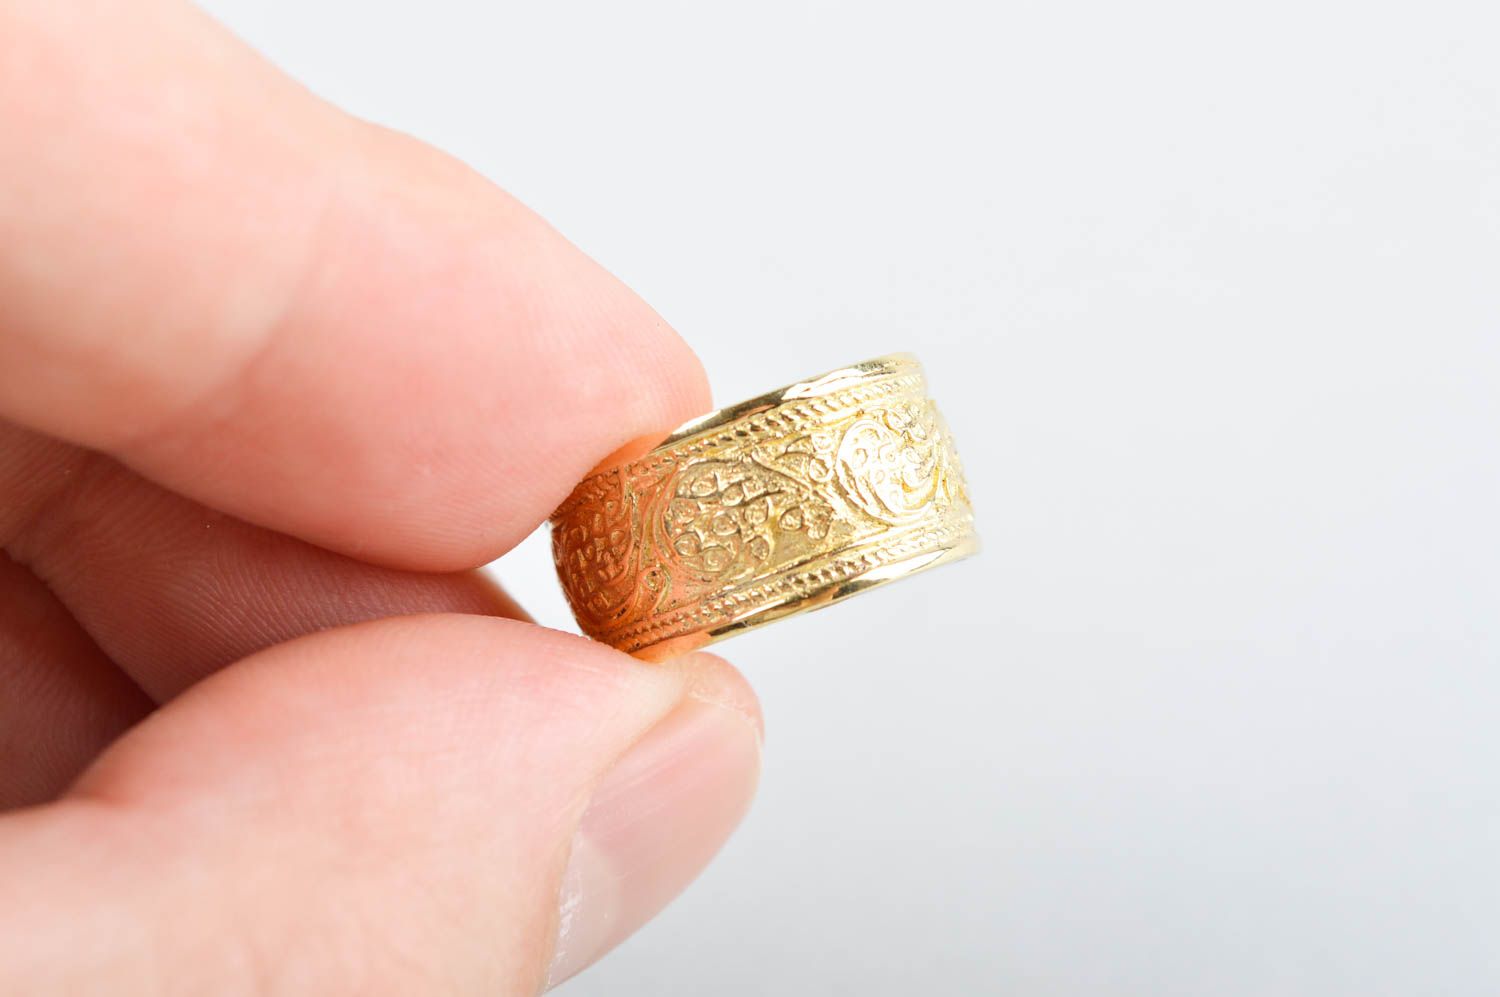 Кольцо ручной работы металлическое украшение из латуни широкое модное кольцо фото 4